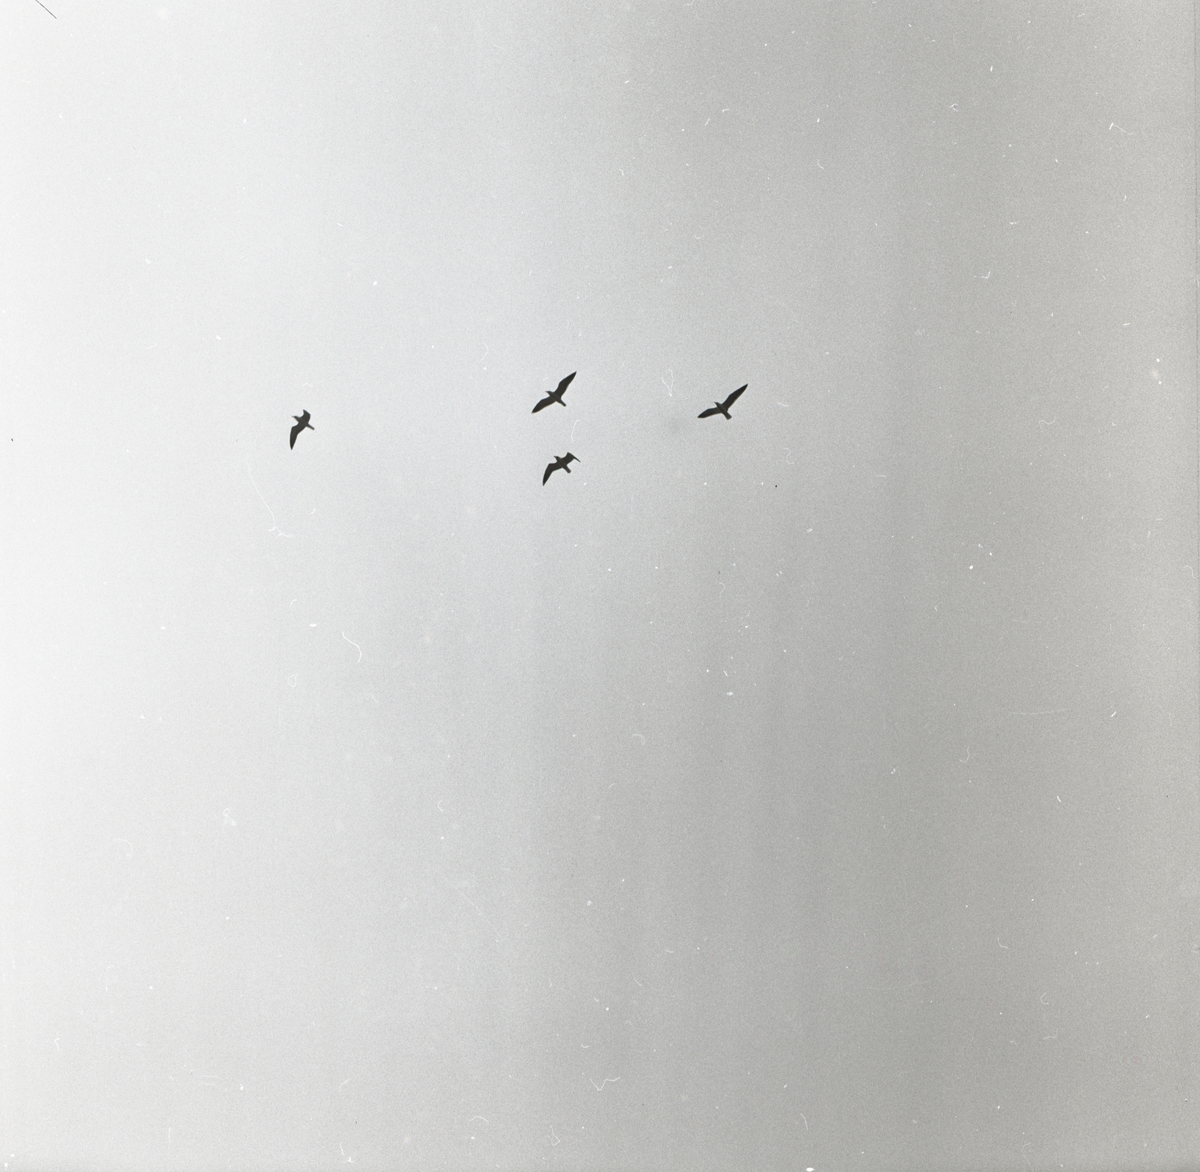 Några måsar cirkulerar högt upp i luften, maj 1959.